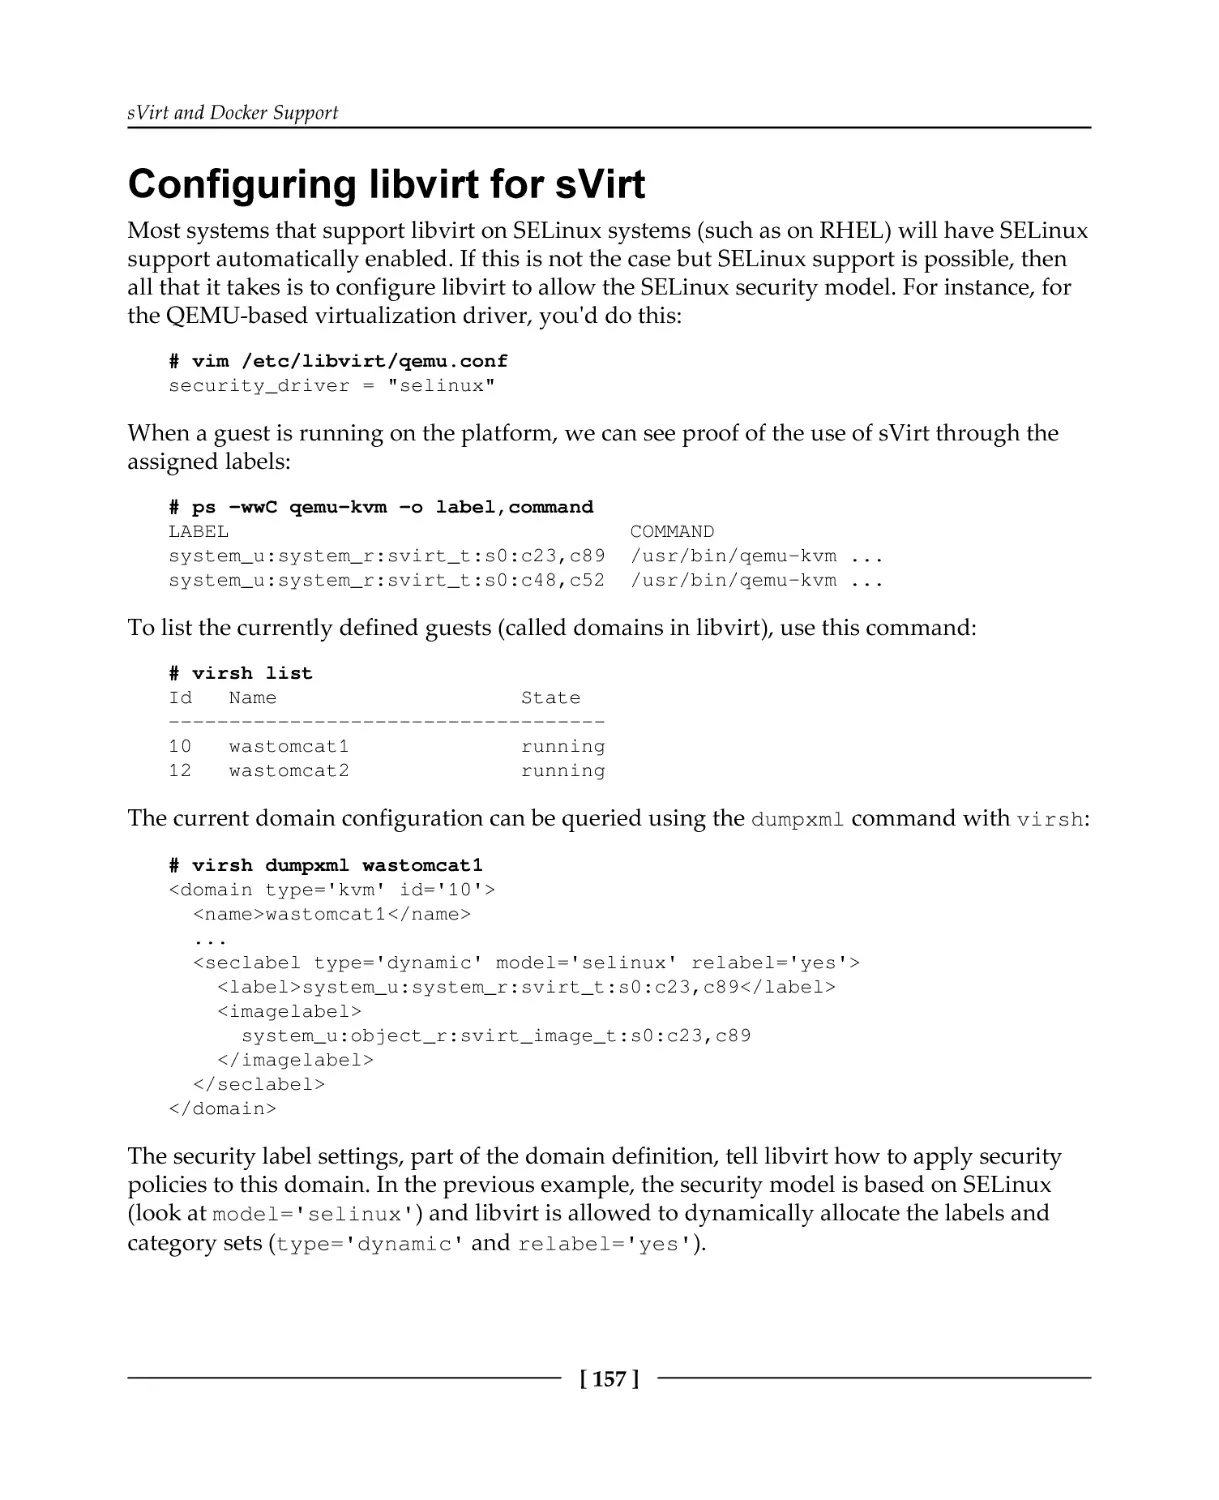 Configuring libvirt for sVirt